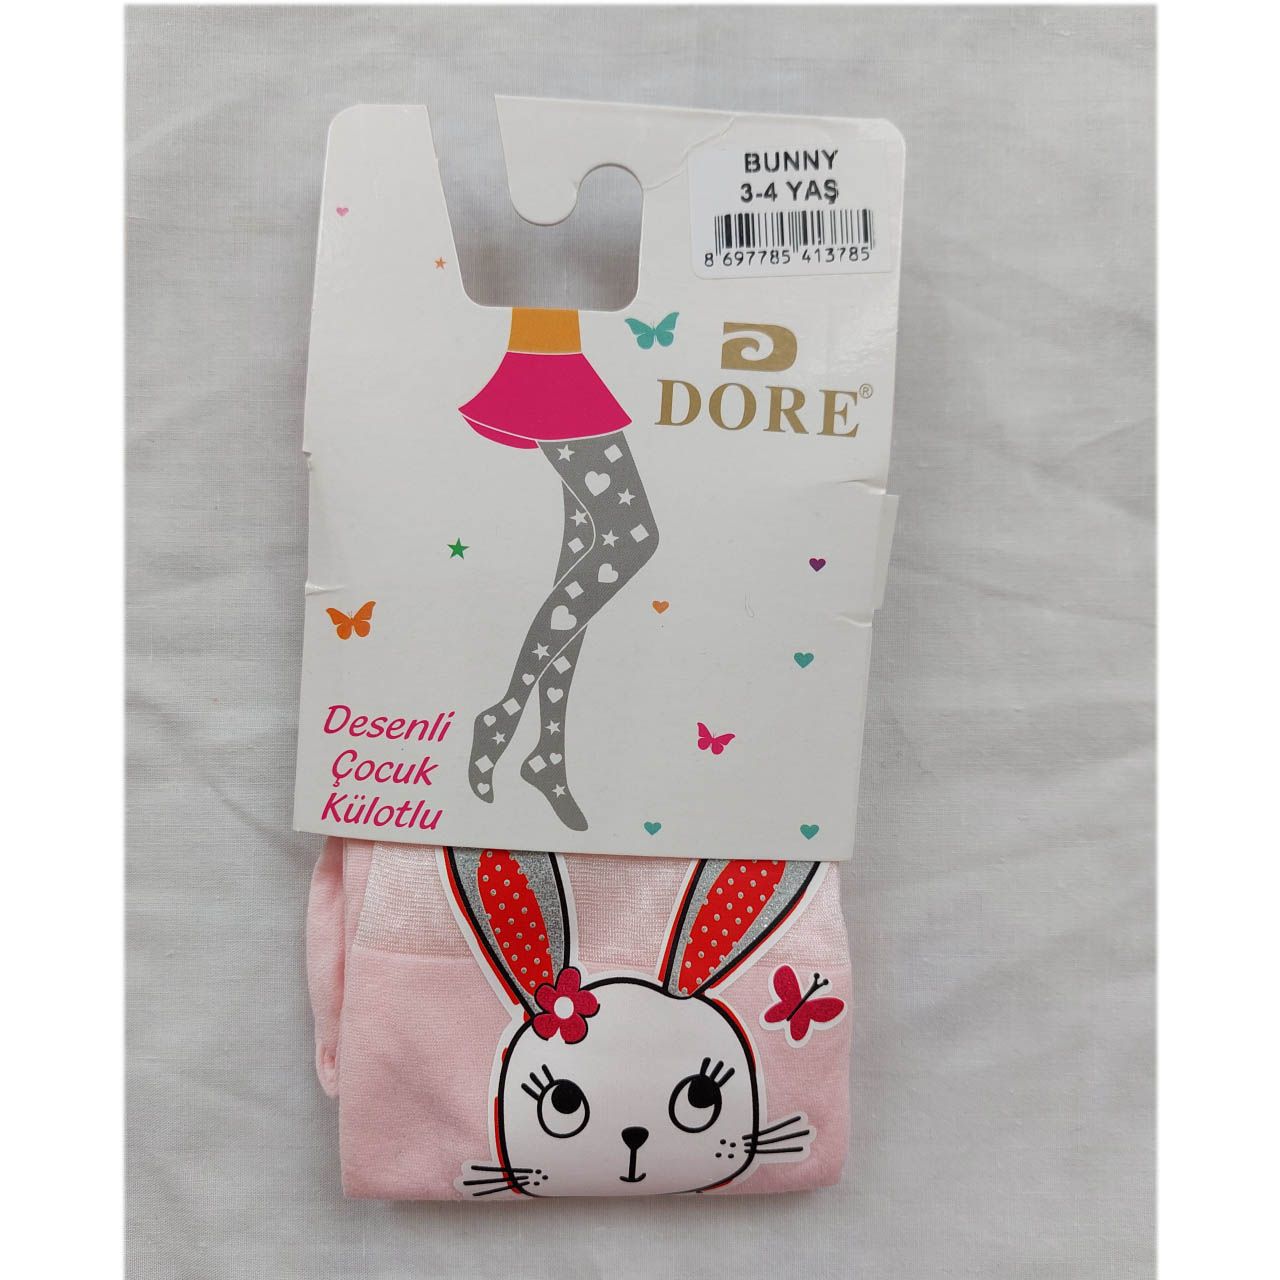 جوراب شلواری دخترانه دورِ مدل bunny طرح خرگوش رنگ صورتی -  - 2